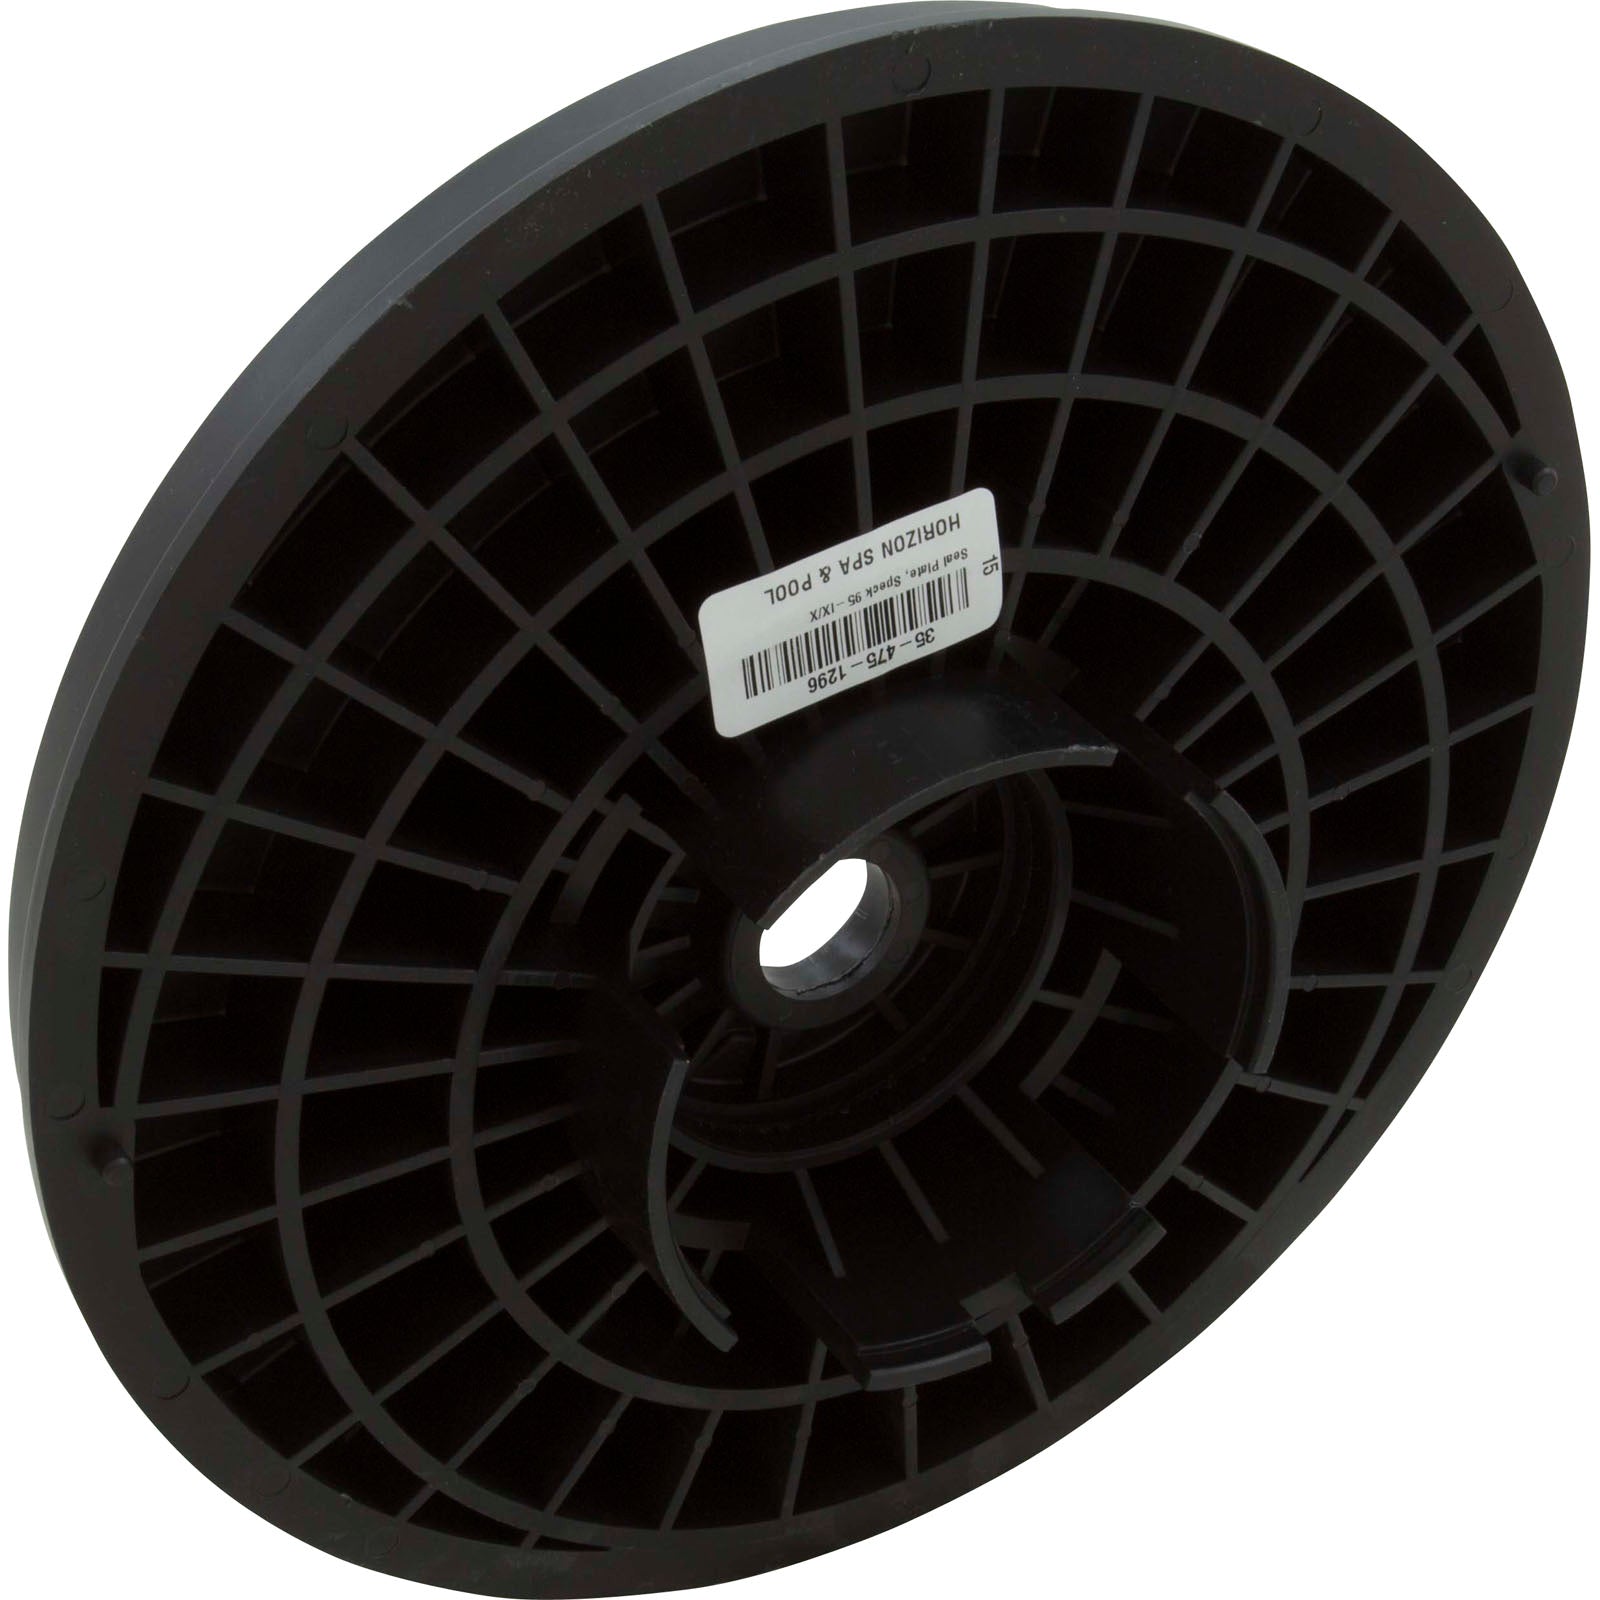 Seal Plate, Speck 95-IX/X- 2902016122